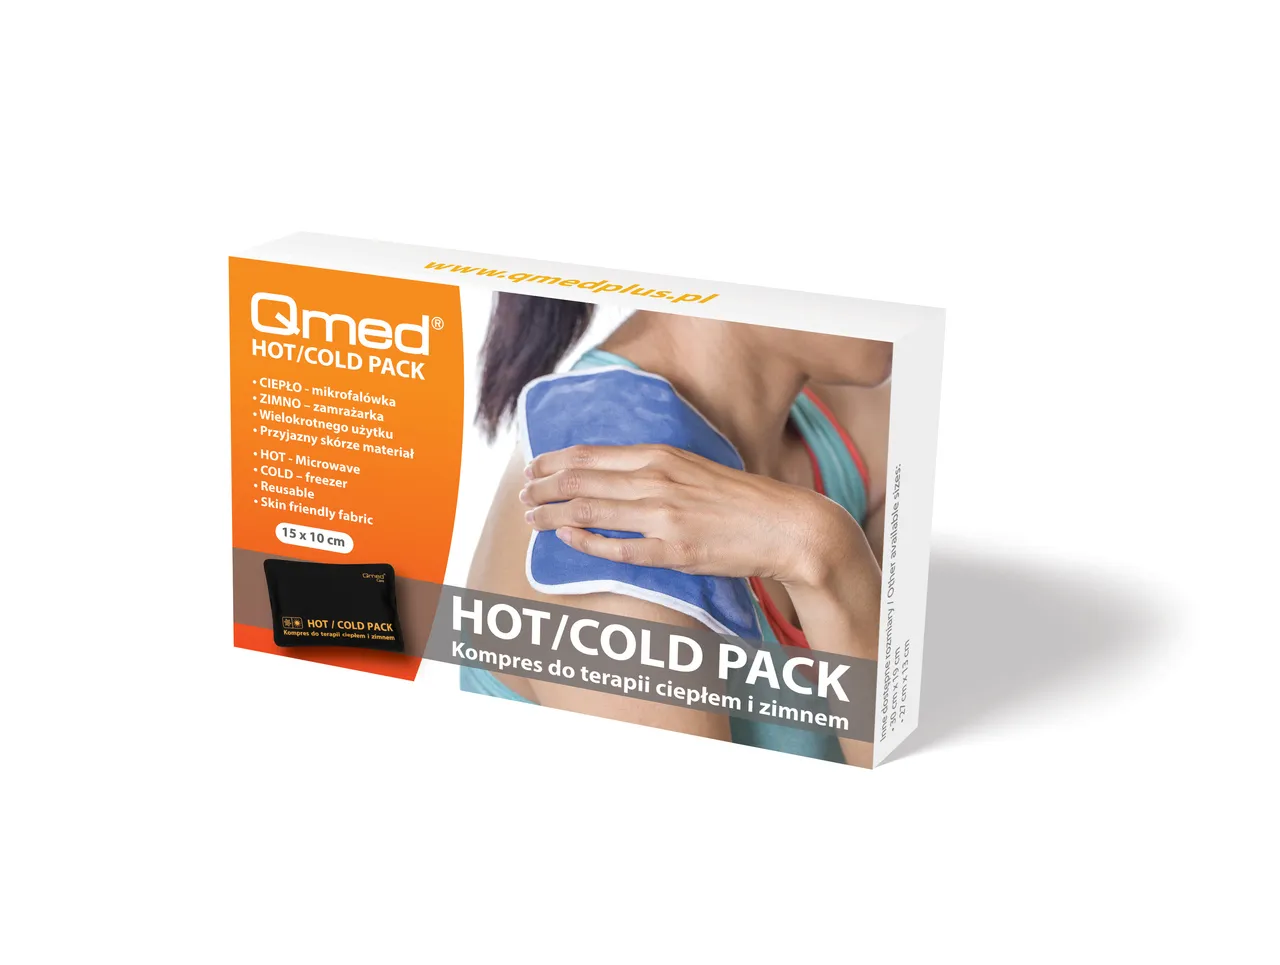 Qmed Hot Cold Pack kompres do terapii ciepłem i zimnem 10x15 cm, 1 szt. 